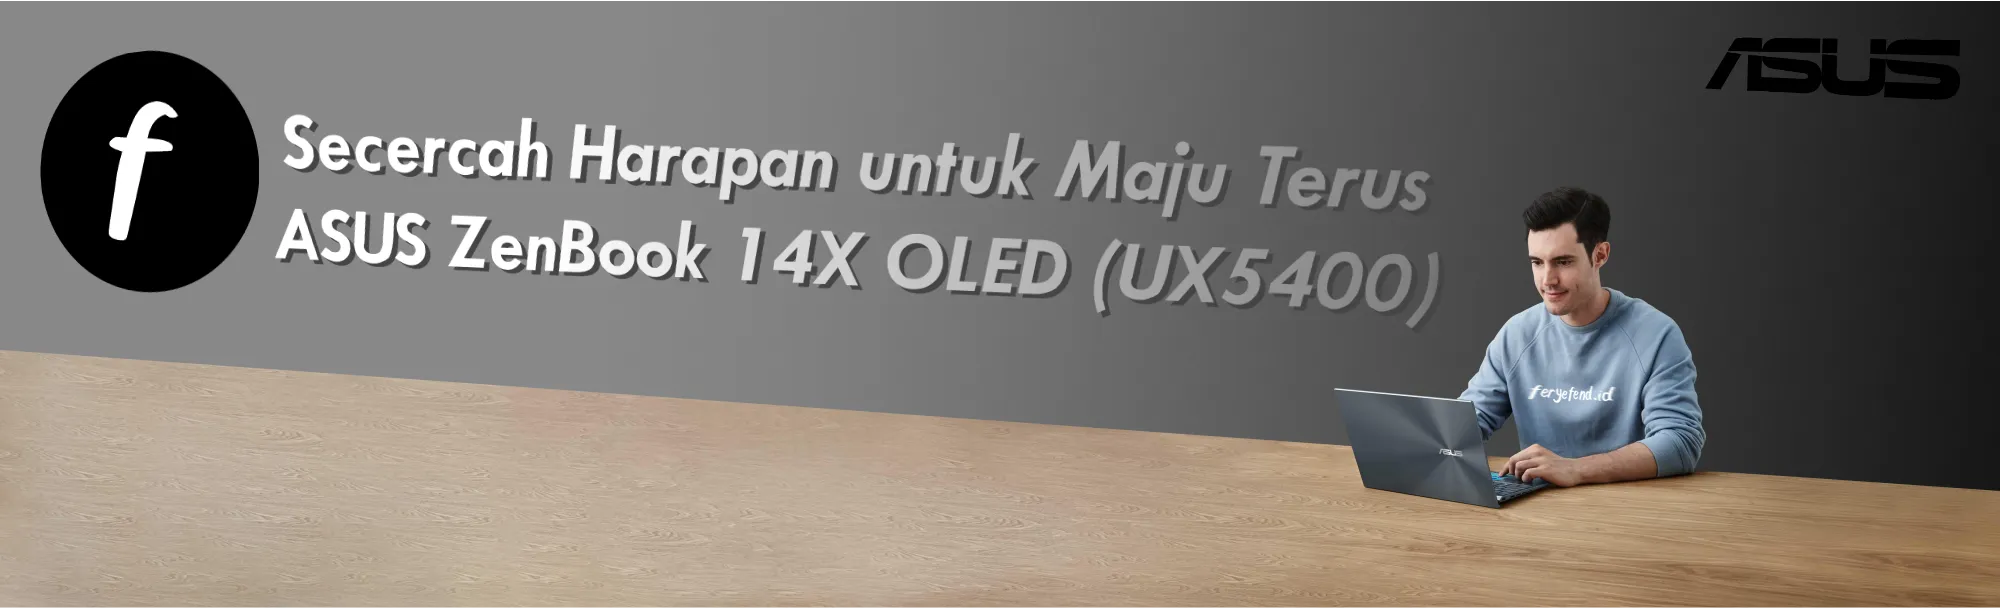 Secercah Harapan untuk Maju Terus, ASUS ZenBook 14X OLED (UX5400)